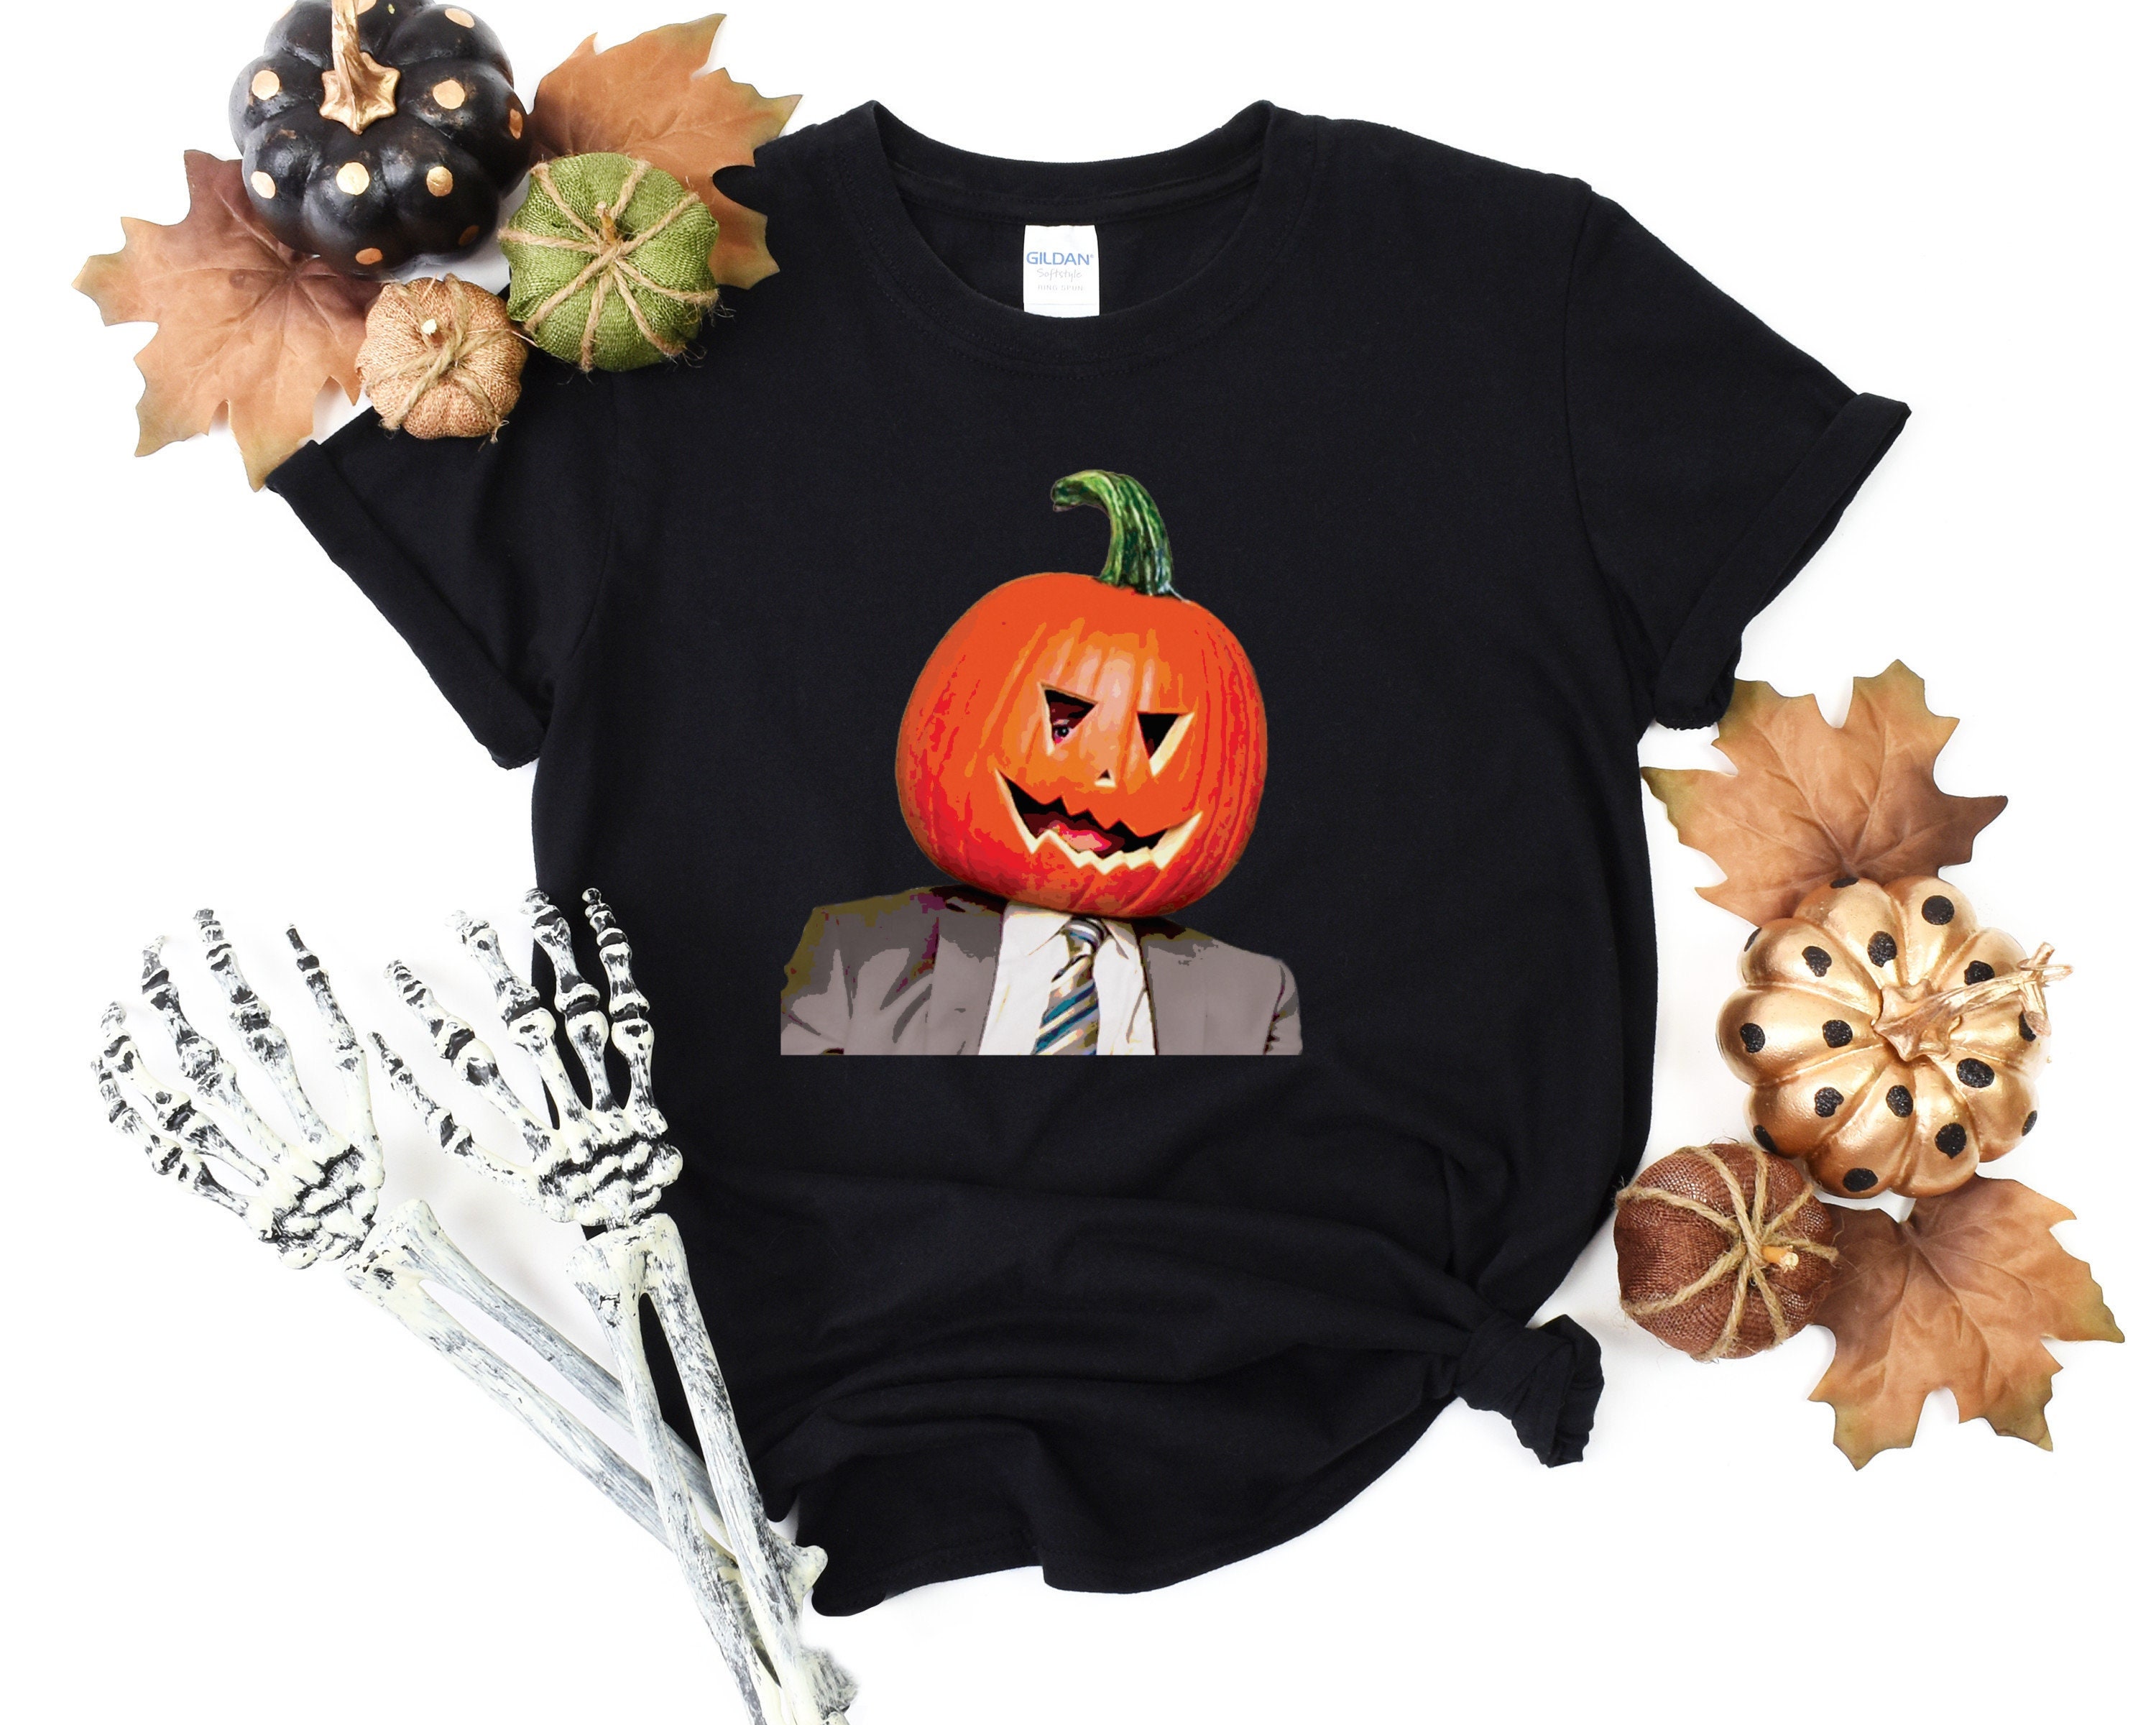 Dwight Pumpkin Head T-Shirt Funny Office Dwight Pumpkin Head Unisex Shirt